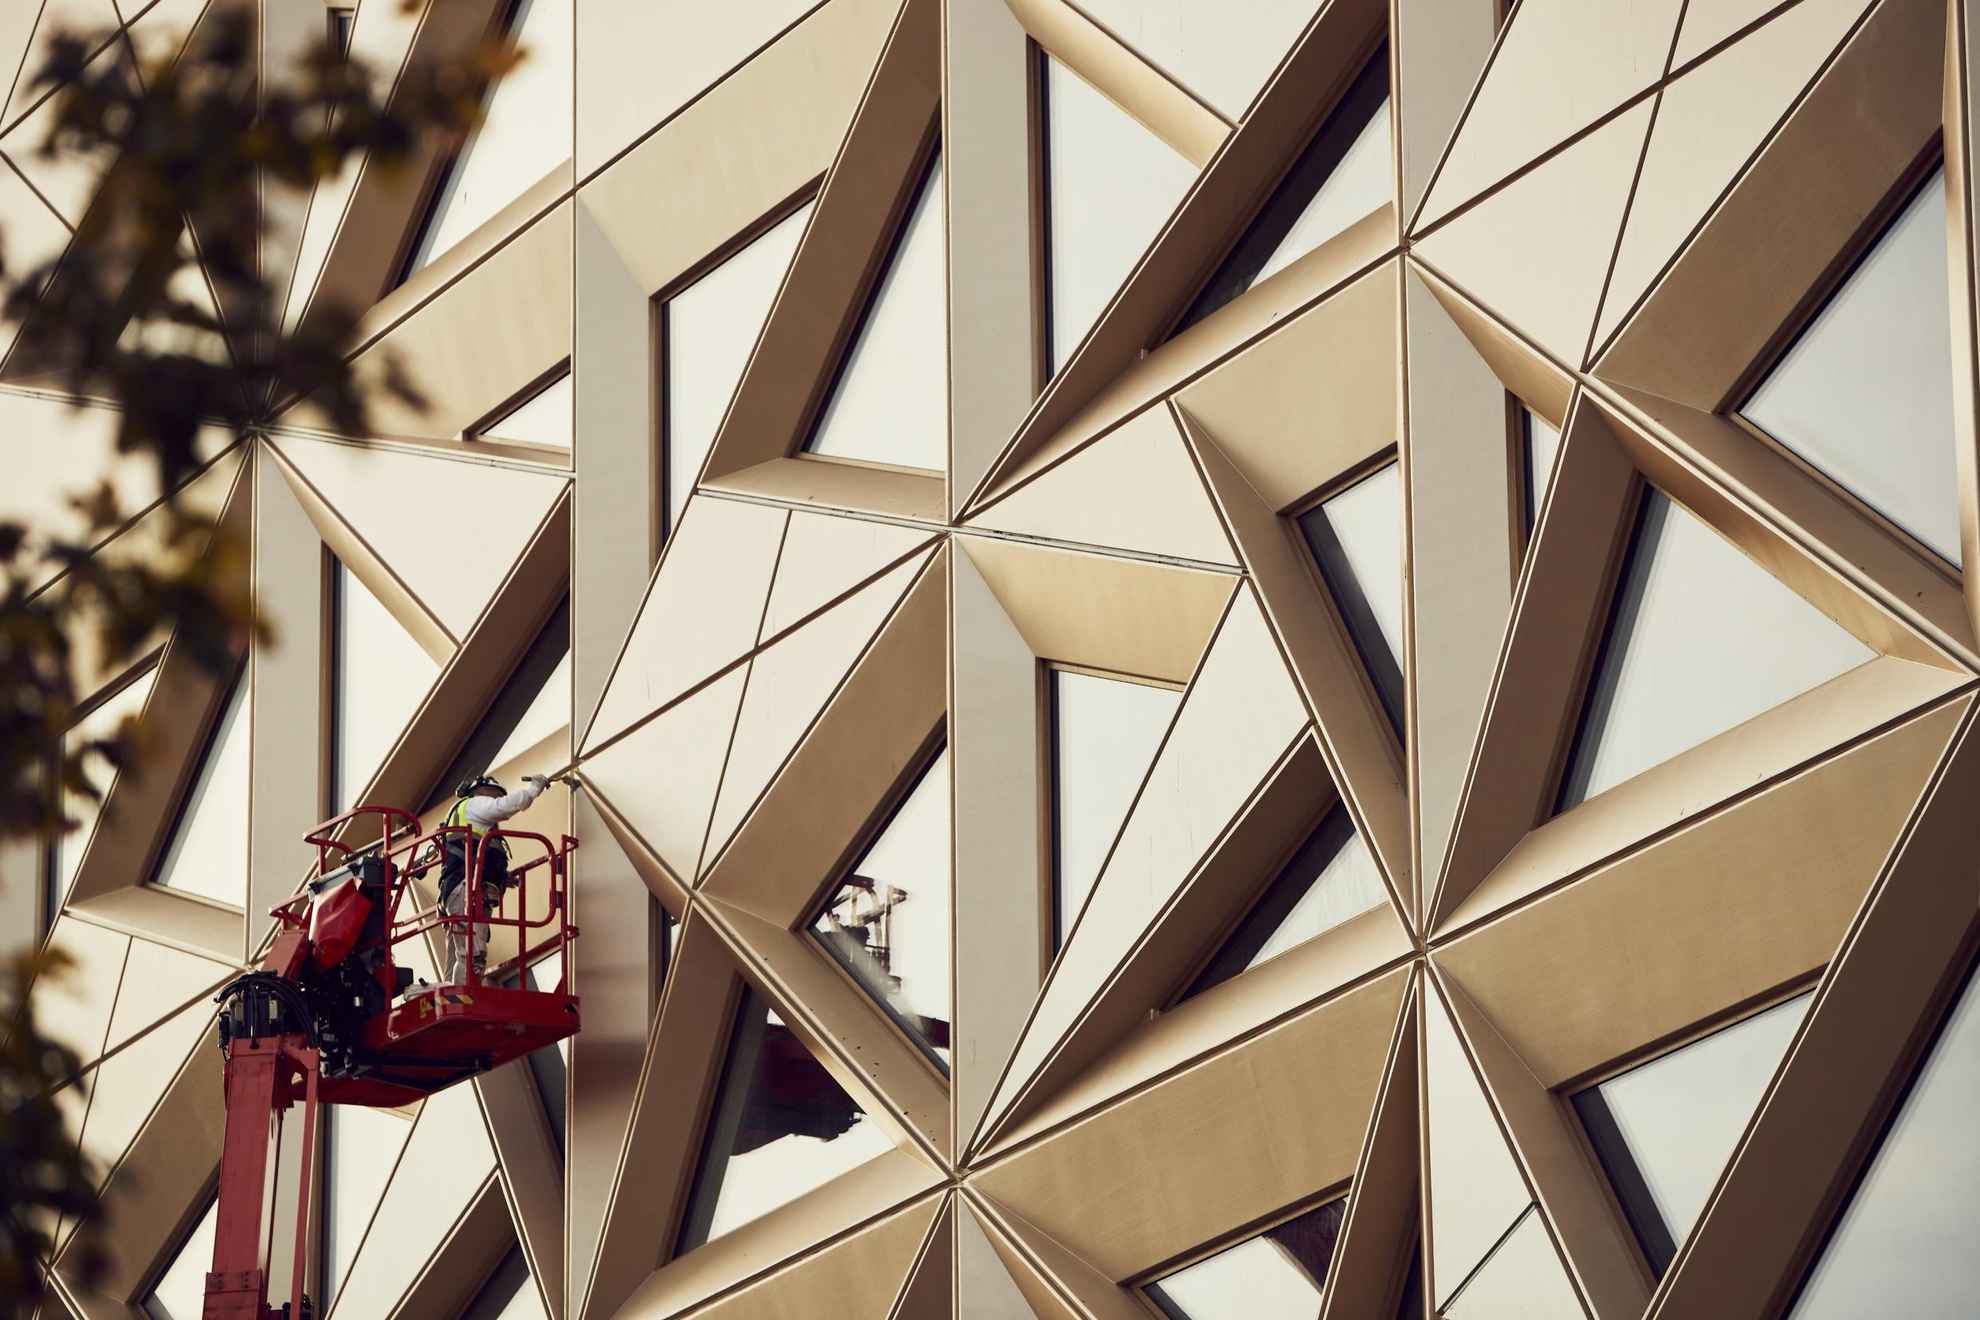 Een persoon in een schilderij van de muur van een gebouw met een glinsterende edelsteenachtige kleur. De gevel en de ramen hebben de vorm van driehoeken.